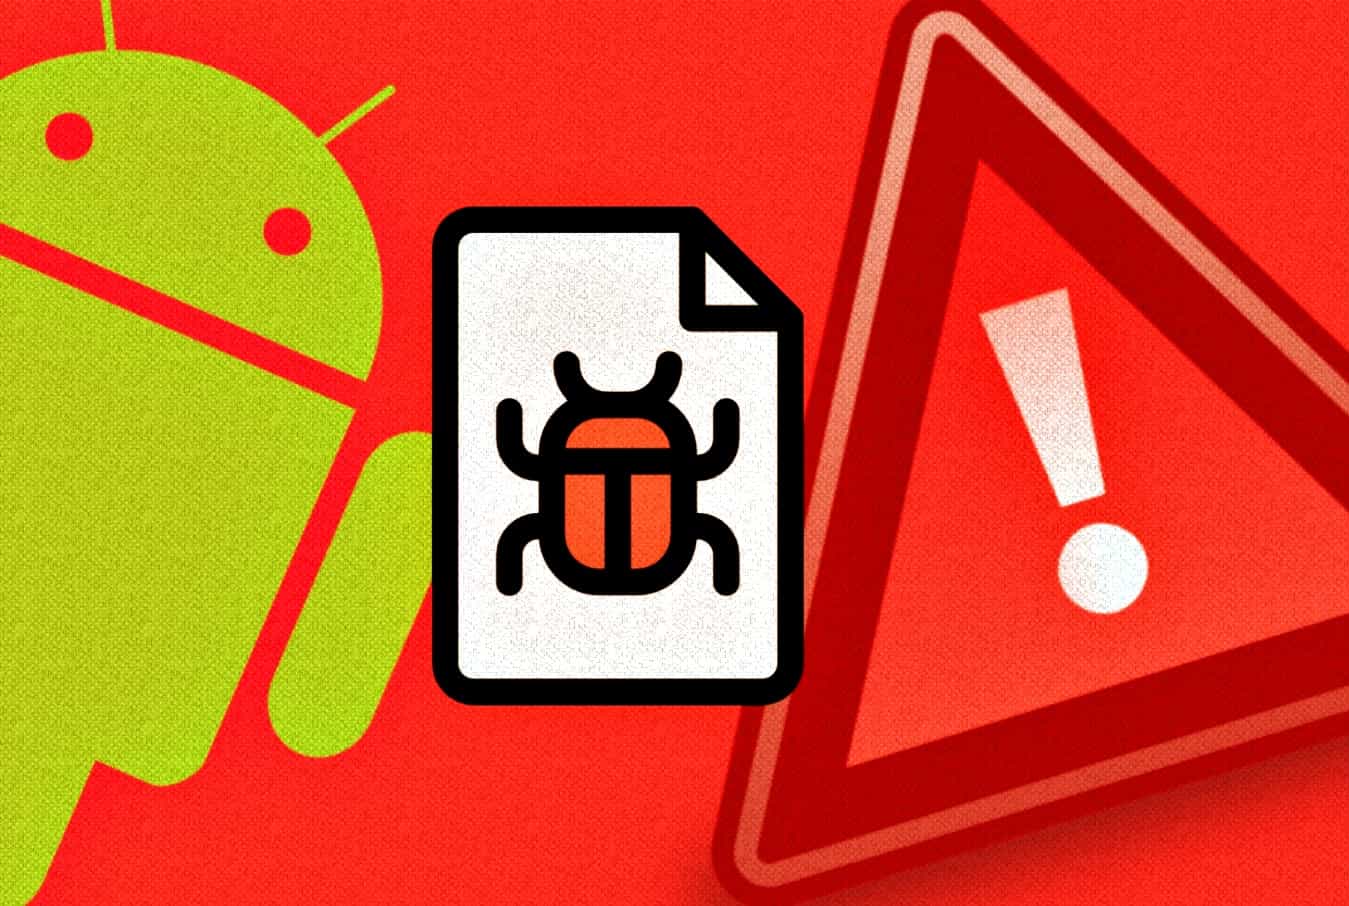 Android: Cuidado, esses aplicativos possuem malware ocultos